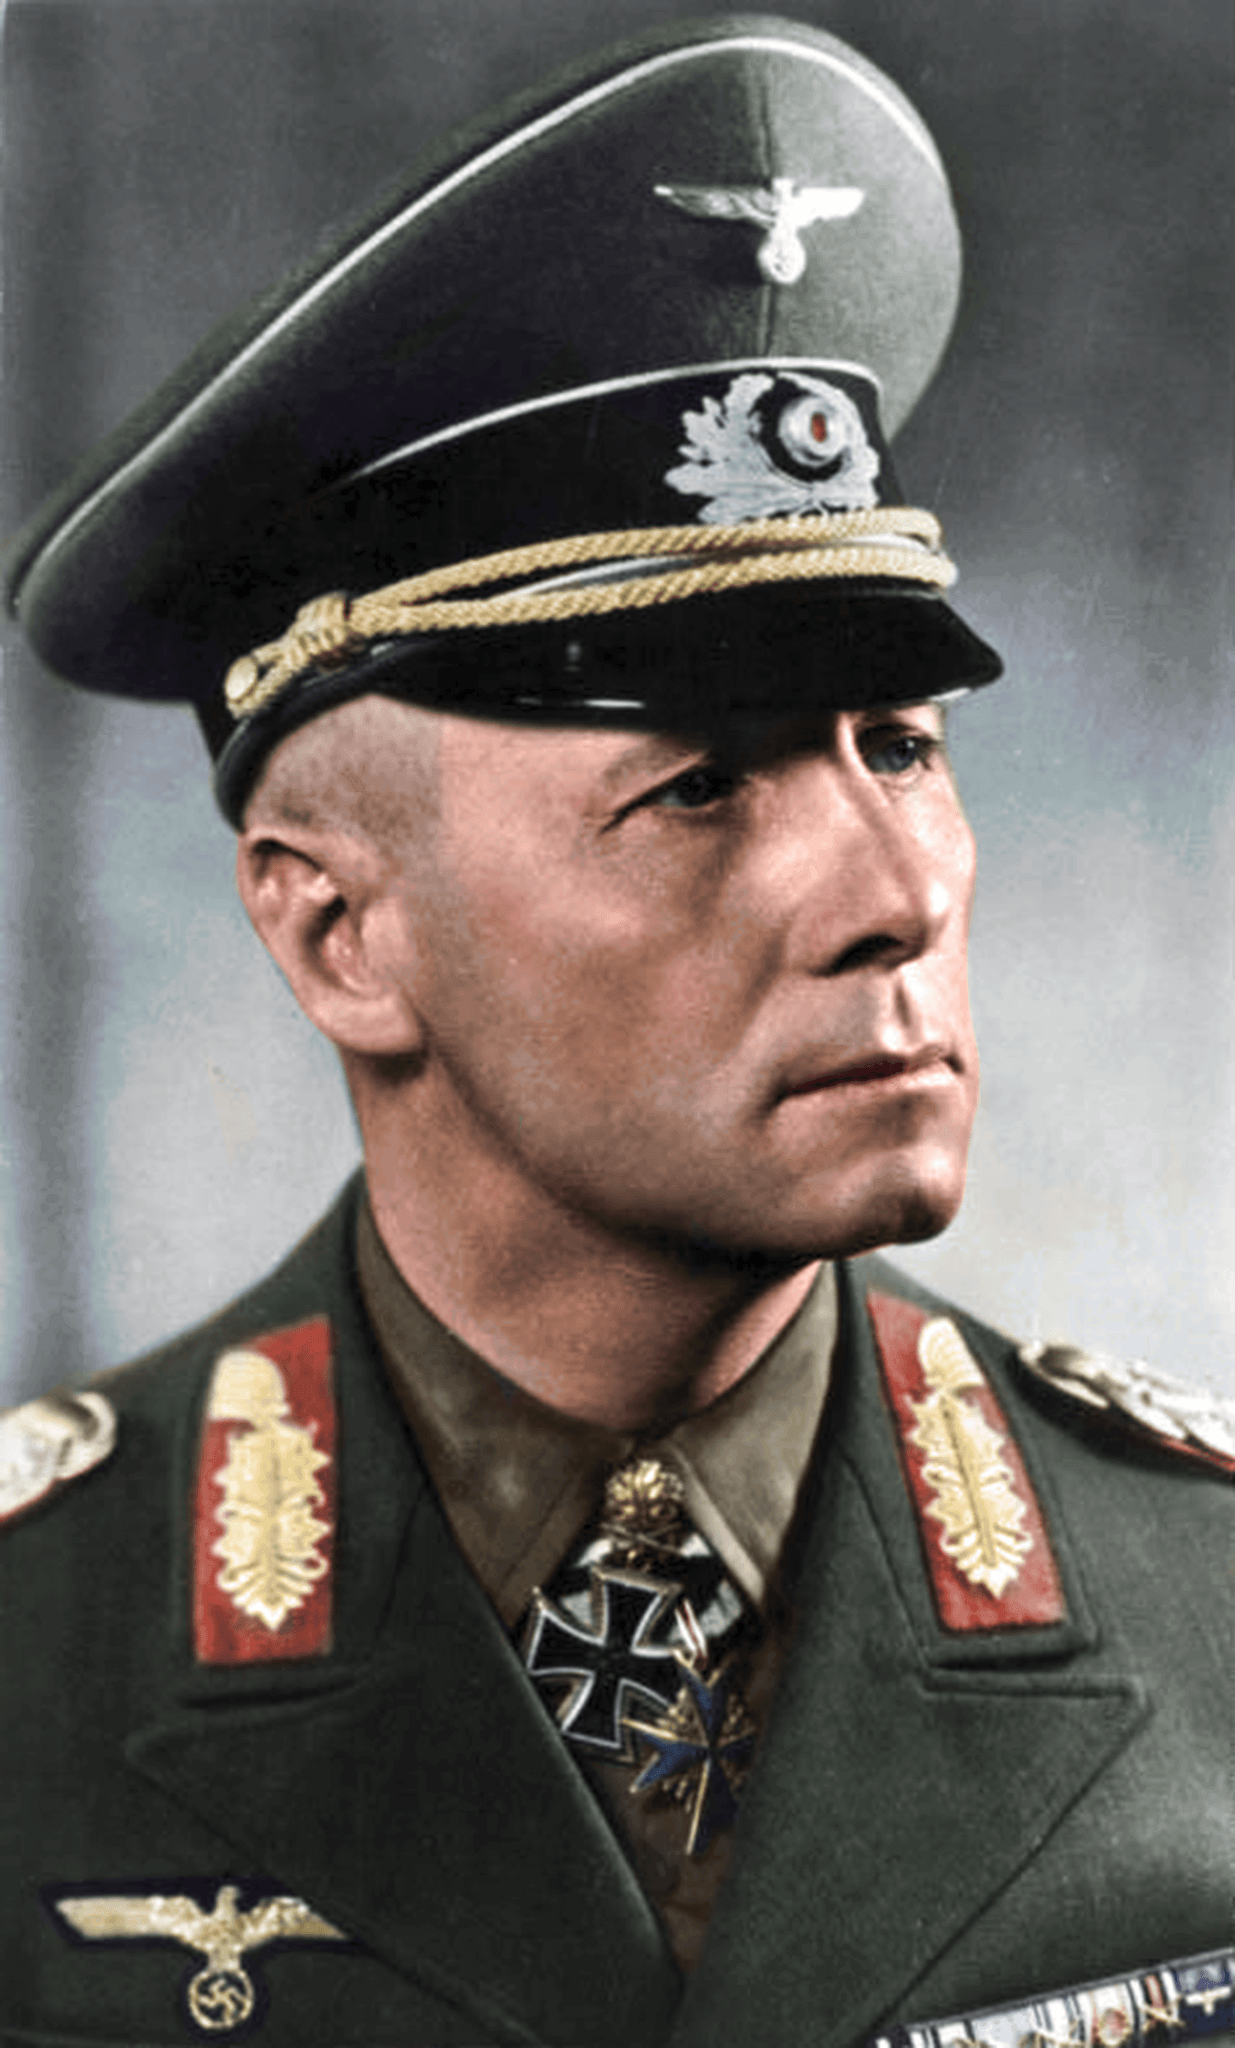 auteur Erwin Rommel de la citation Pour moi, les soldats sont tous égaux. Ces Noirs portaient votre même uniforme, combattu de votre côté, et vous serez donc dans la même prison.